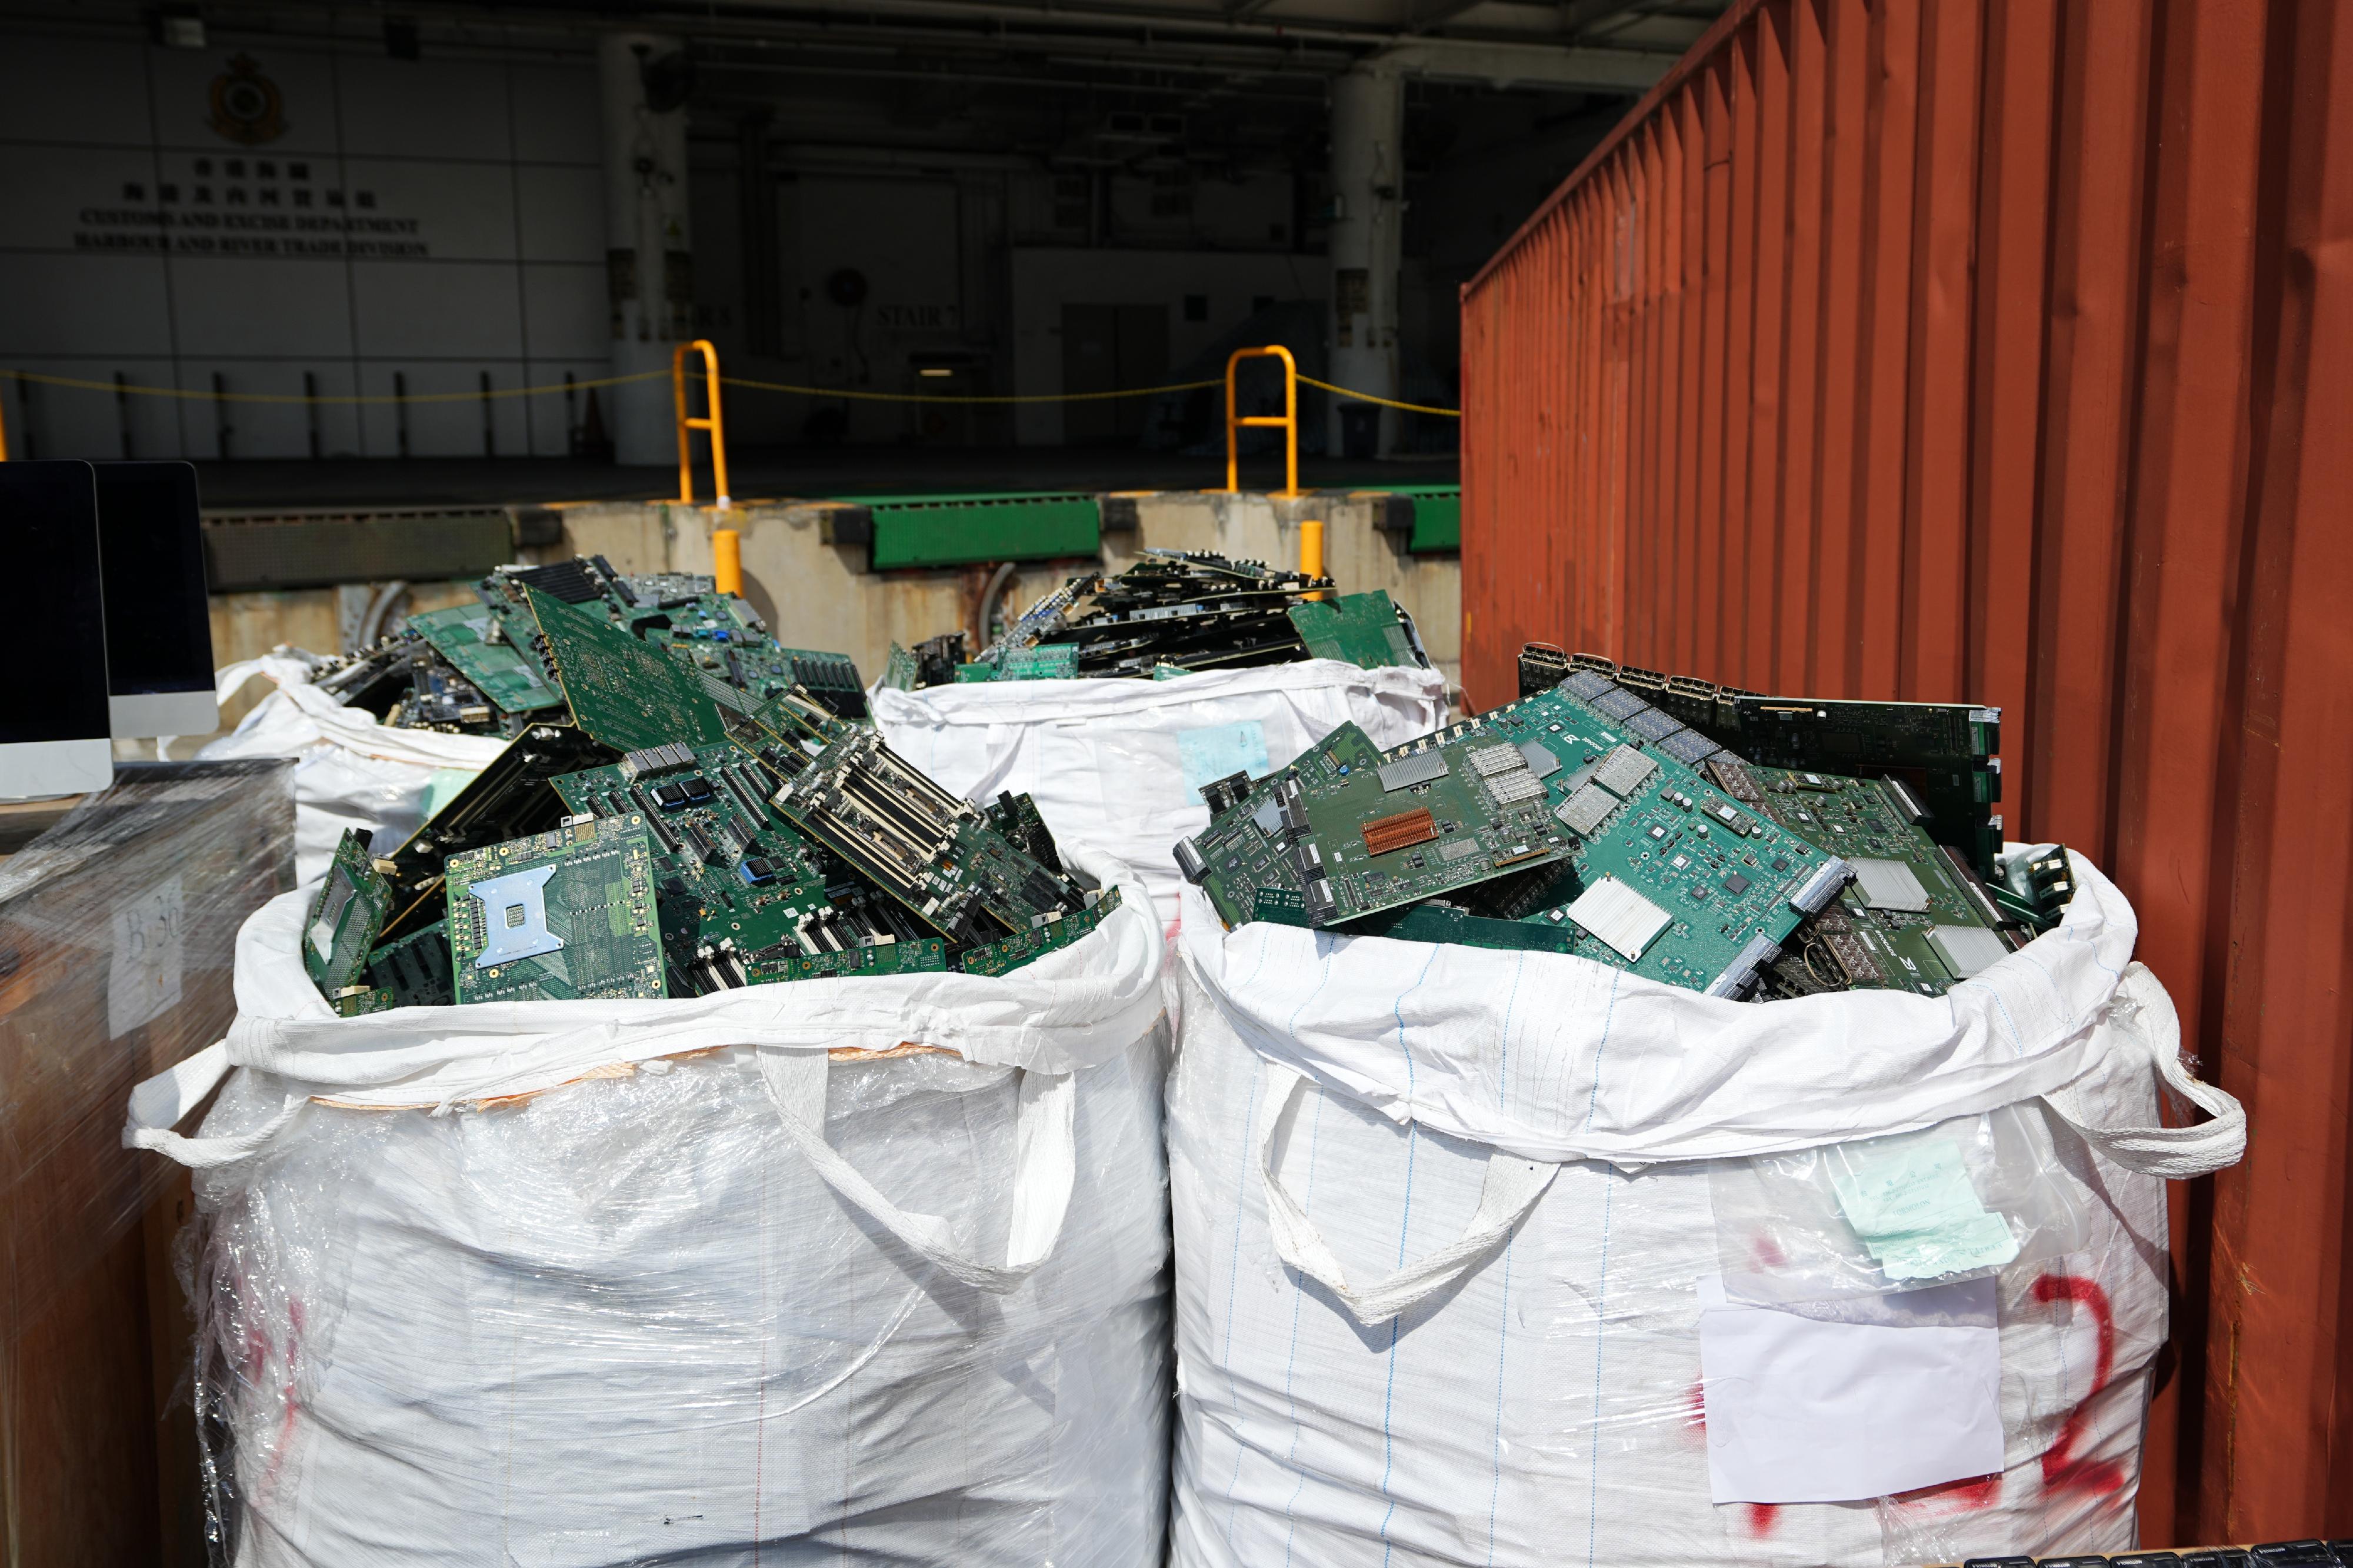 香港海關於八月至九月進行代號「破浪」的特別行動，偵破四宗涉嫌利用遠洋船走私的案件和兩宗涉嫌利用內河船走私的案件，並檢獲大批懷疑走私貨物，估計市值共約一億元。圖示部分檢獲的電子廢料。

